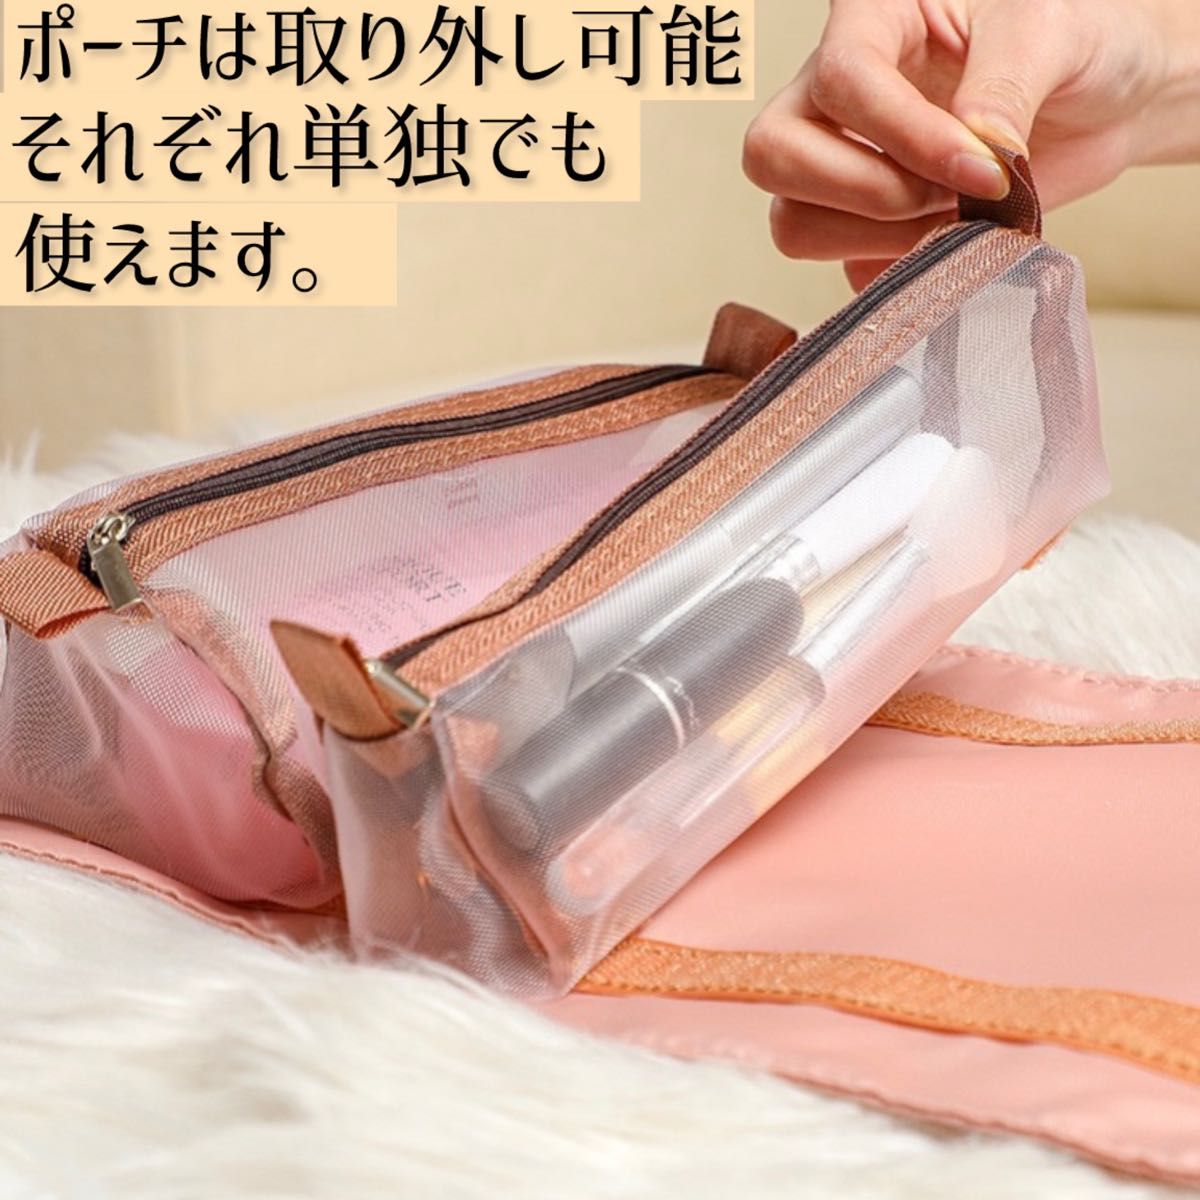 トラベルポーチ ピンク 化粧ポーチ コスメポーチ 大容量 旅行 出張 韓国